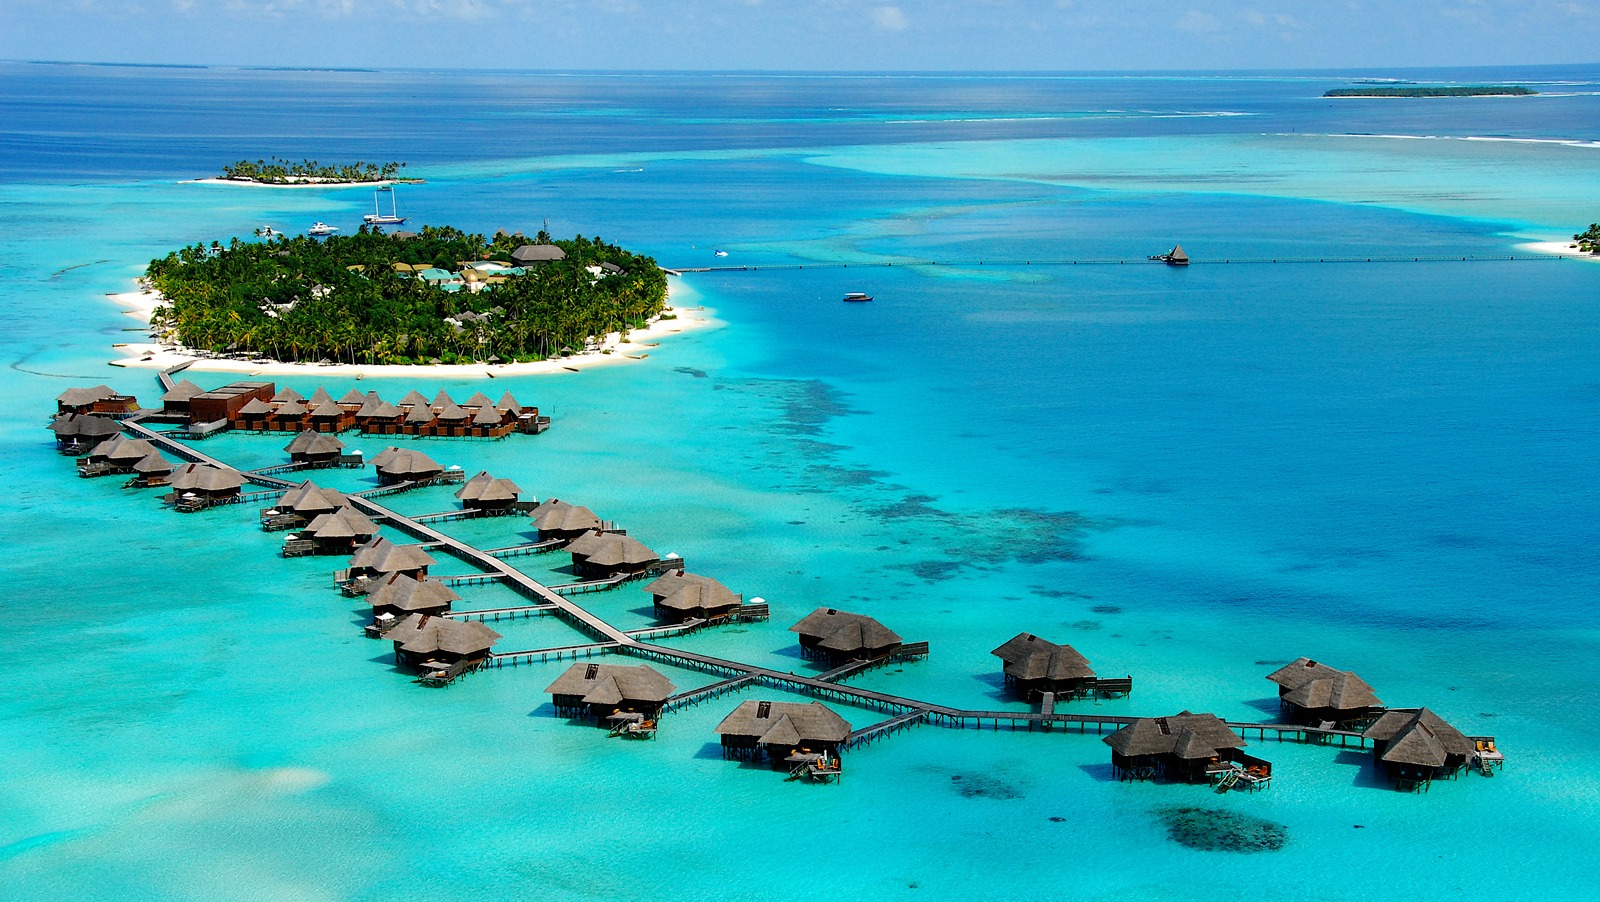 tourism in maldives essay